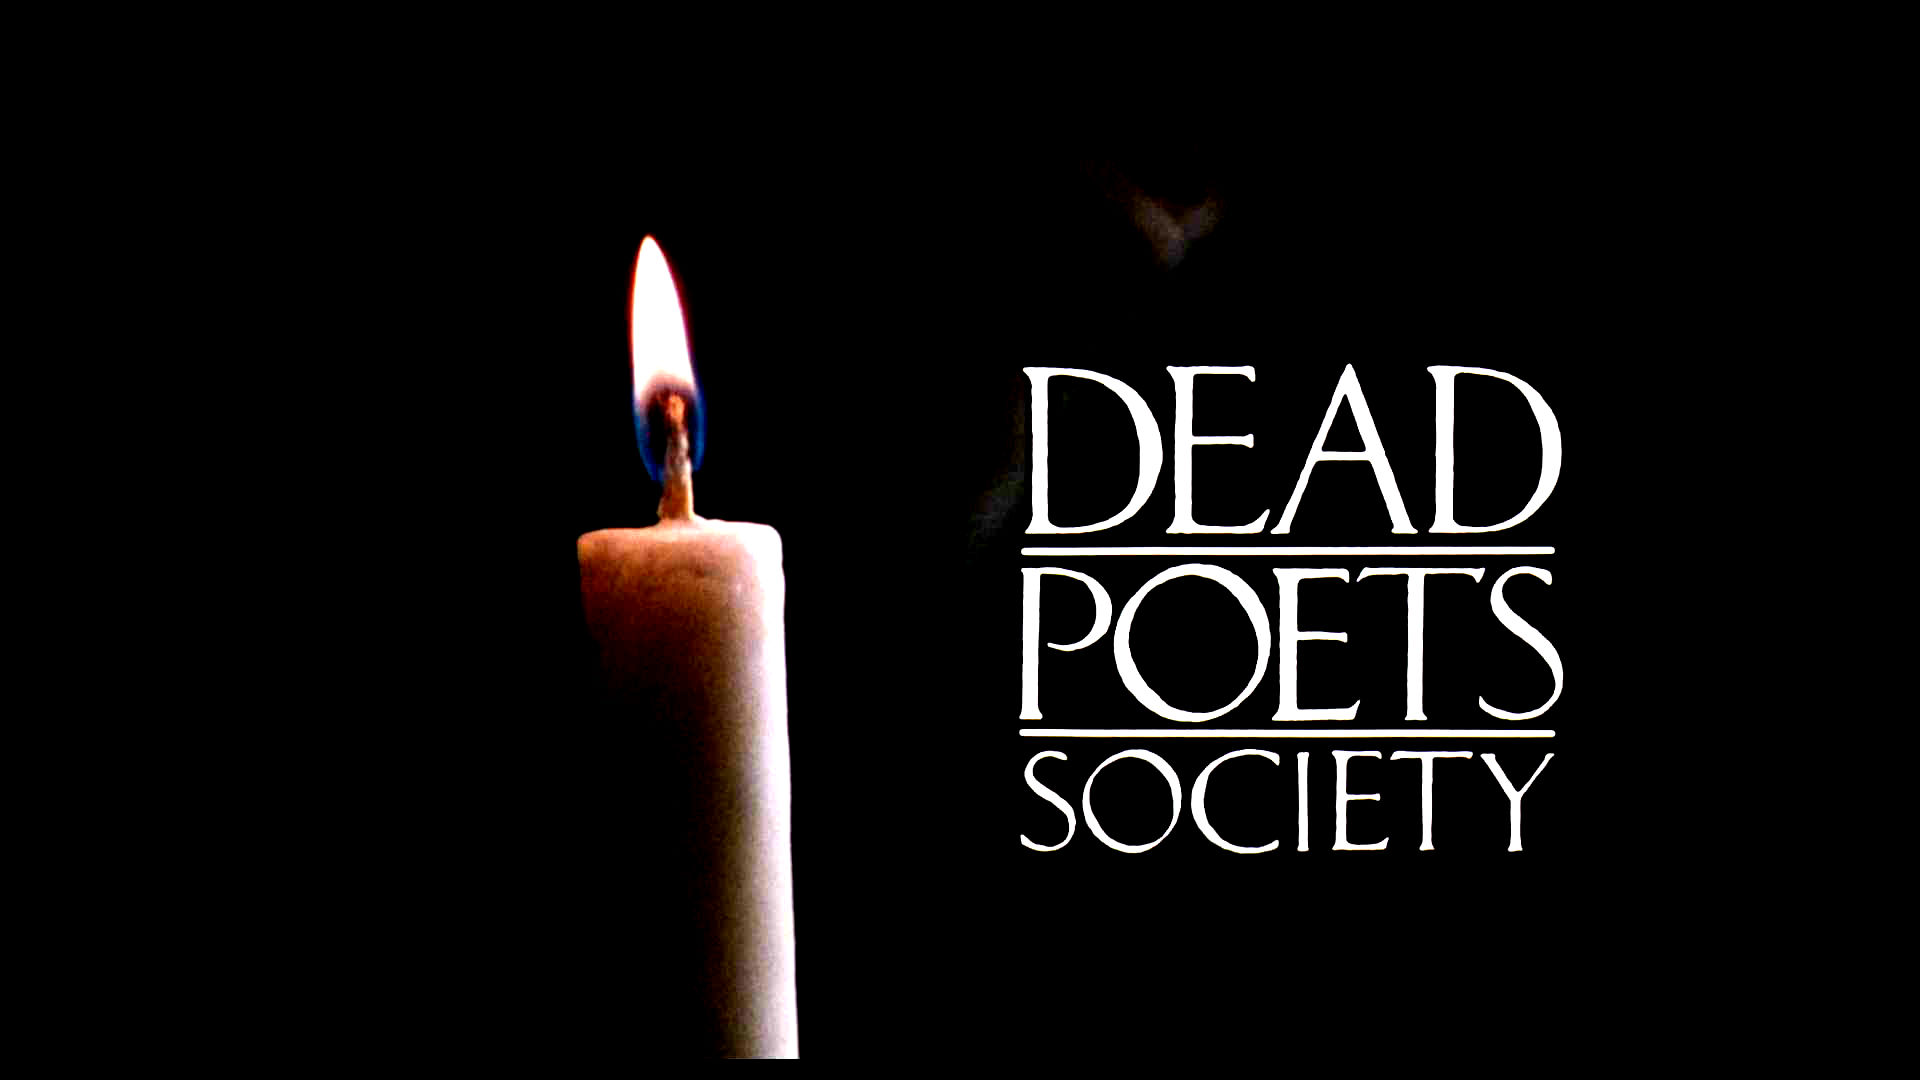 Dead poets society HD wallpapers  Pxfuel